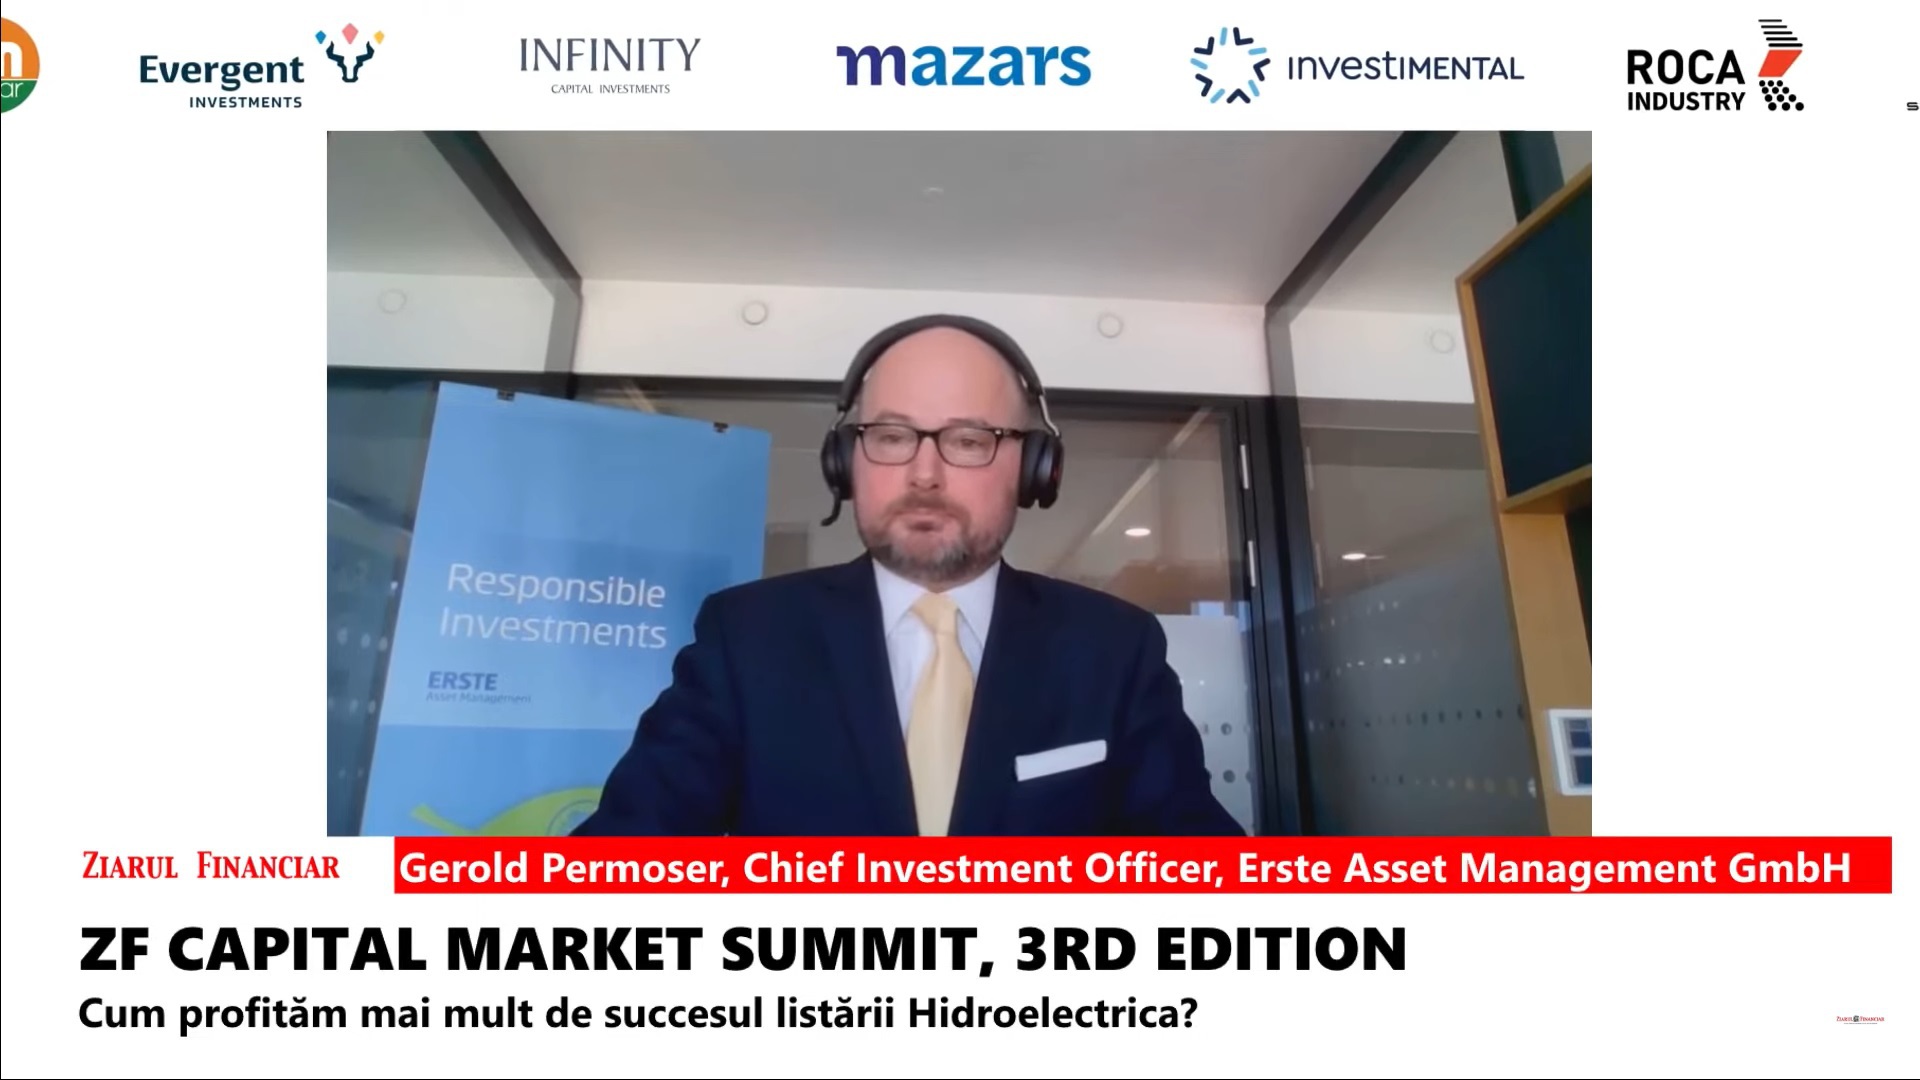 Gerold Permoser, Erste Asset Management GmbH: Perspectivele unui al doilea mandat Trump în SUA reprezintă una dintre principalele preocupări ale pieţei în 2024